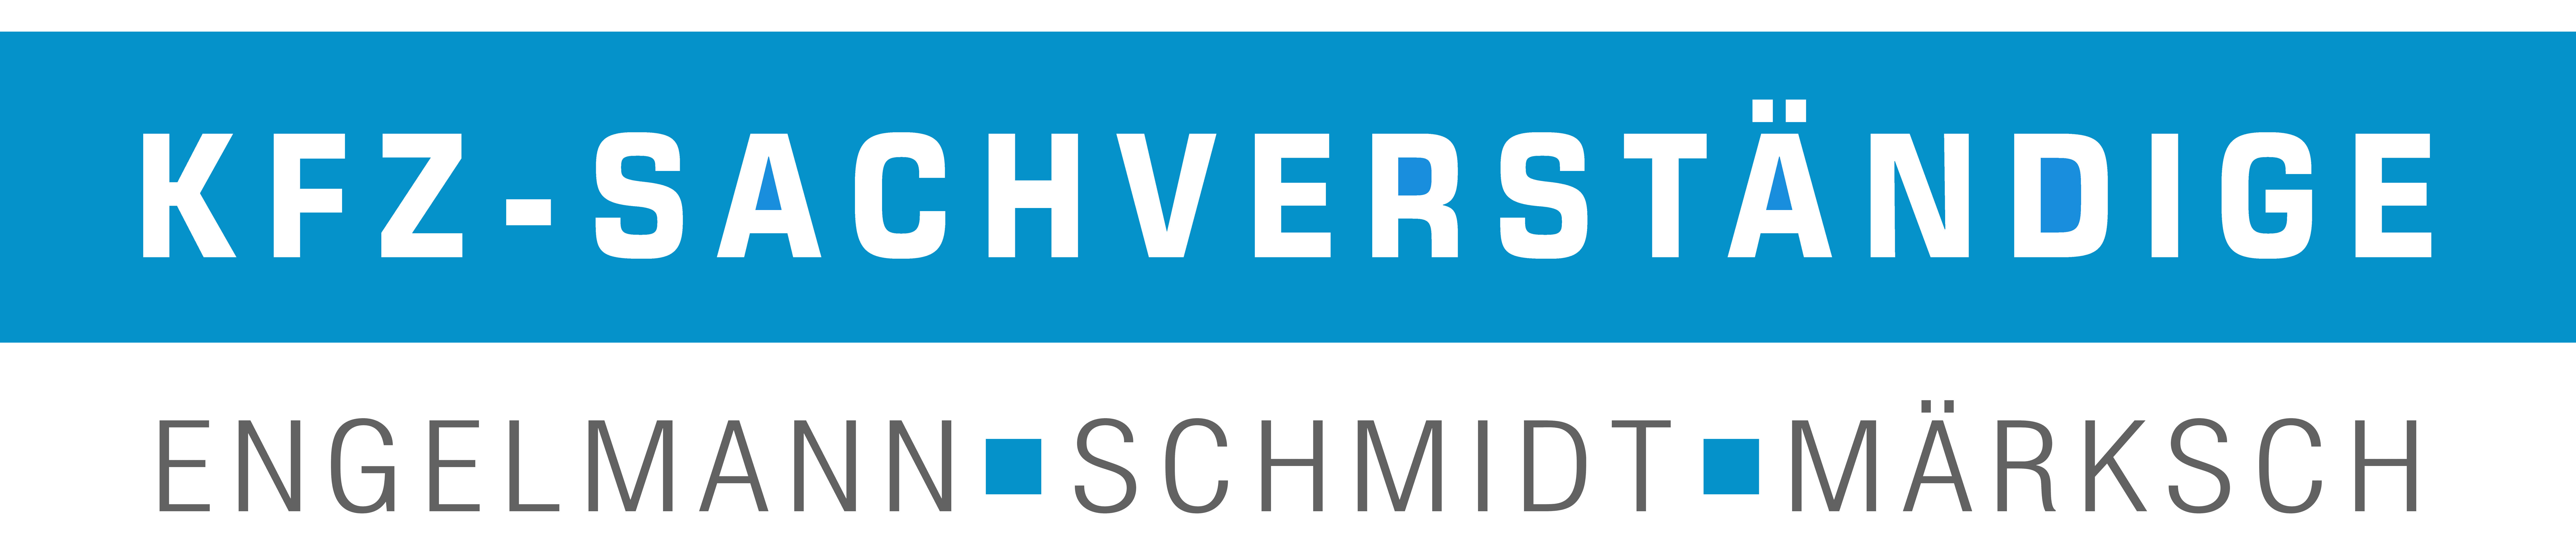 Logo_Hintergrund_Weiss